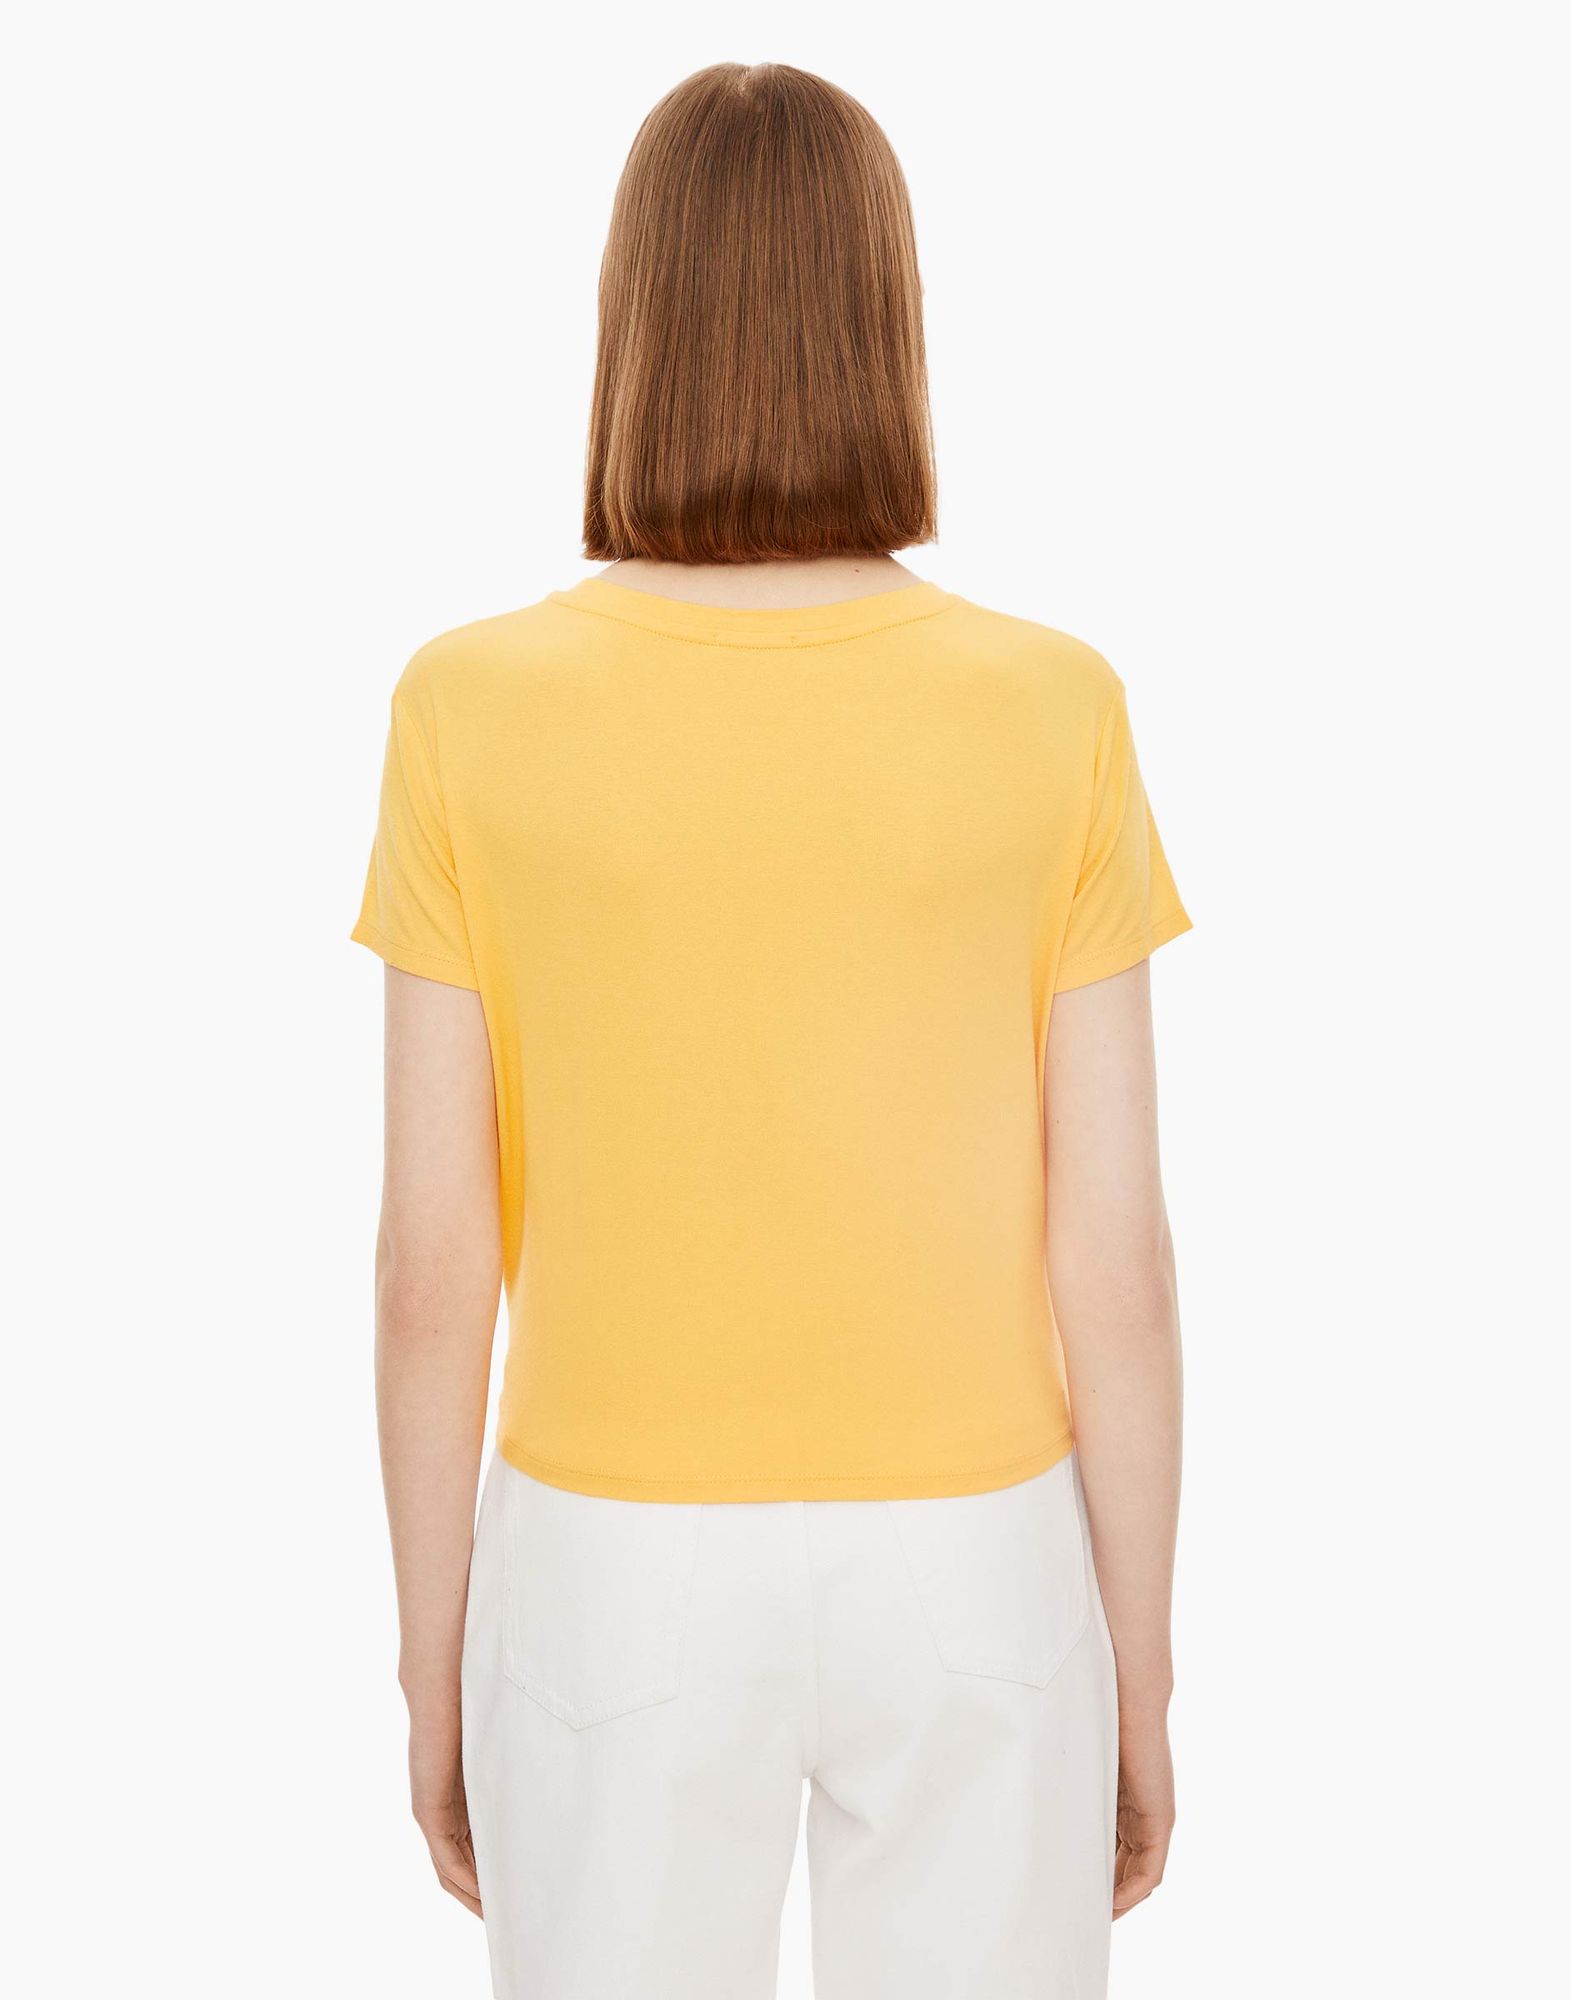 Жёлтая футболка с завязками и надписью женская-3